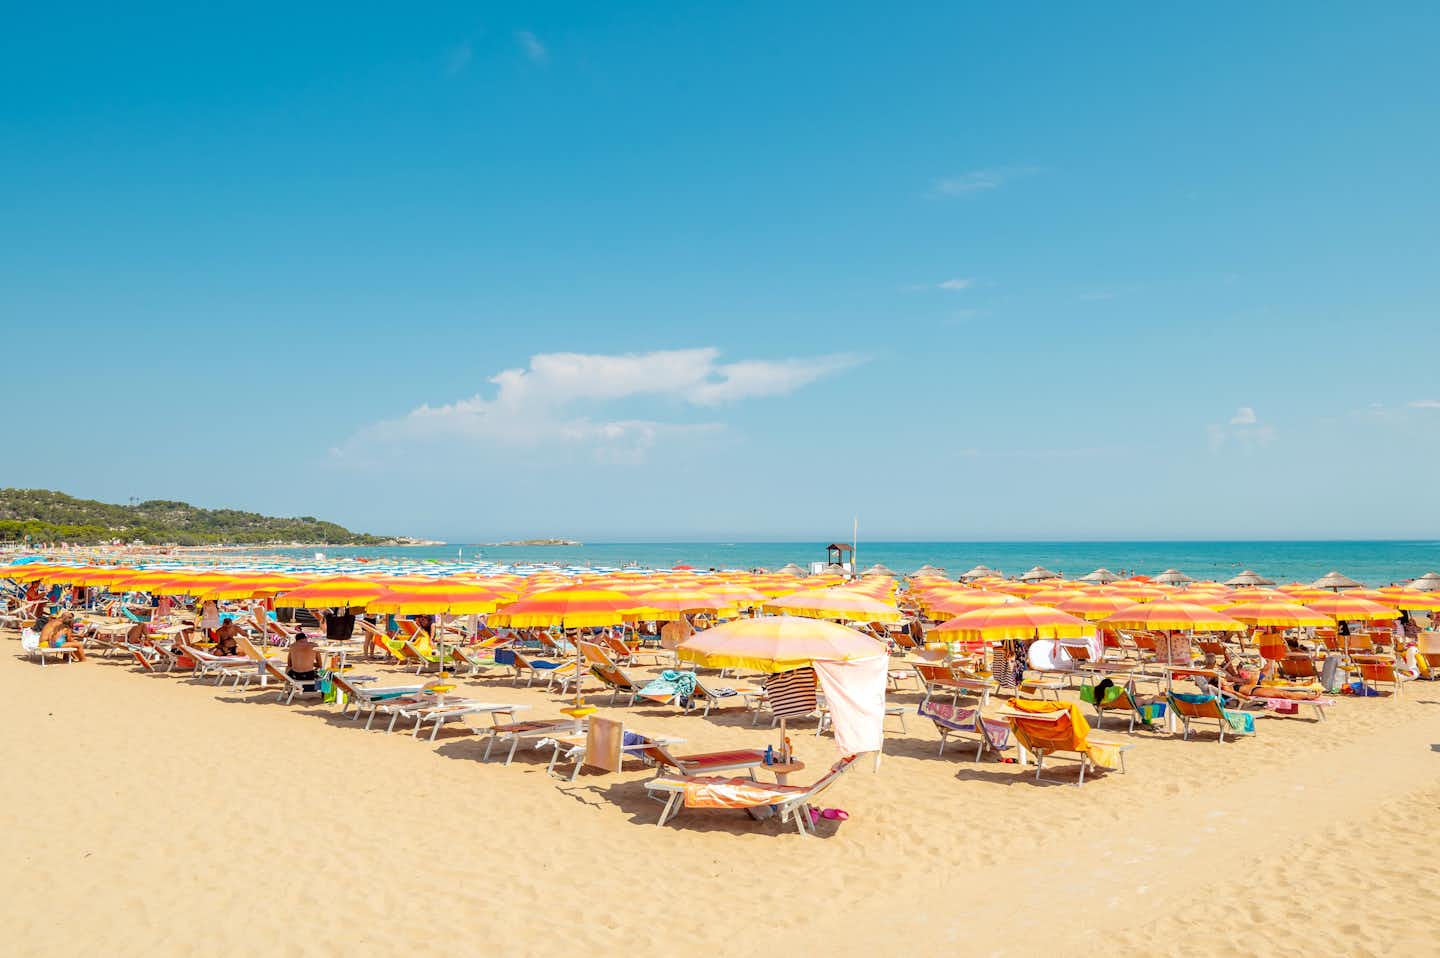 Centro Vacanze Oriente - Blick auf den Badestrand mit Liegestühlen und Sonnenschirmen